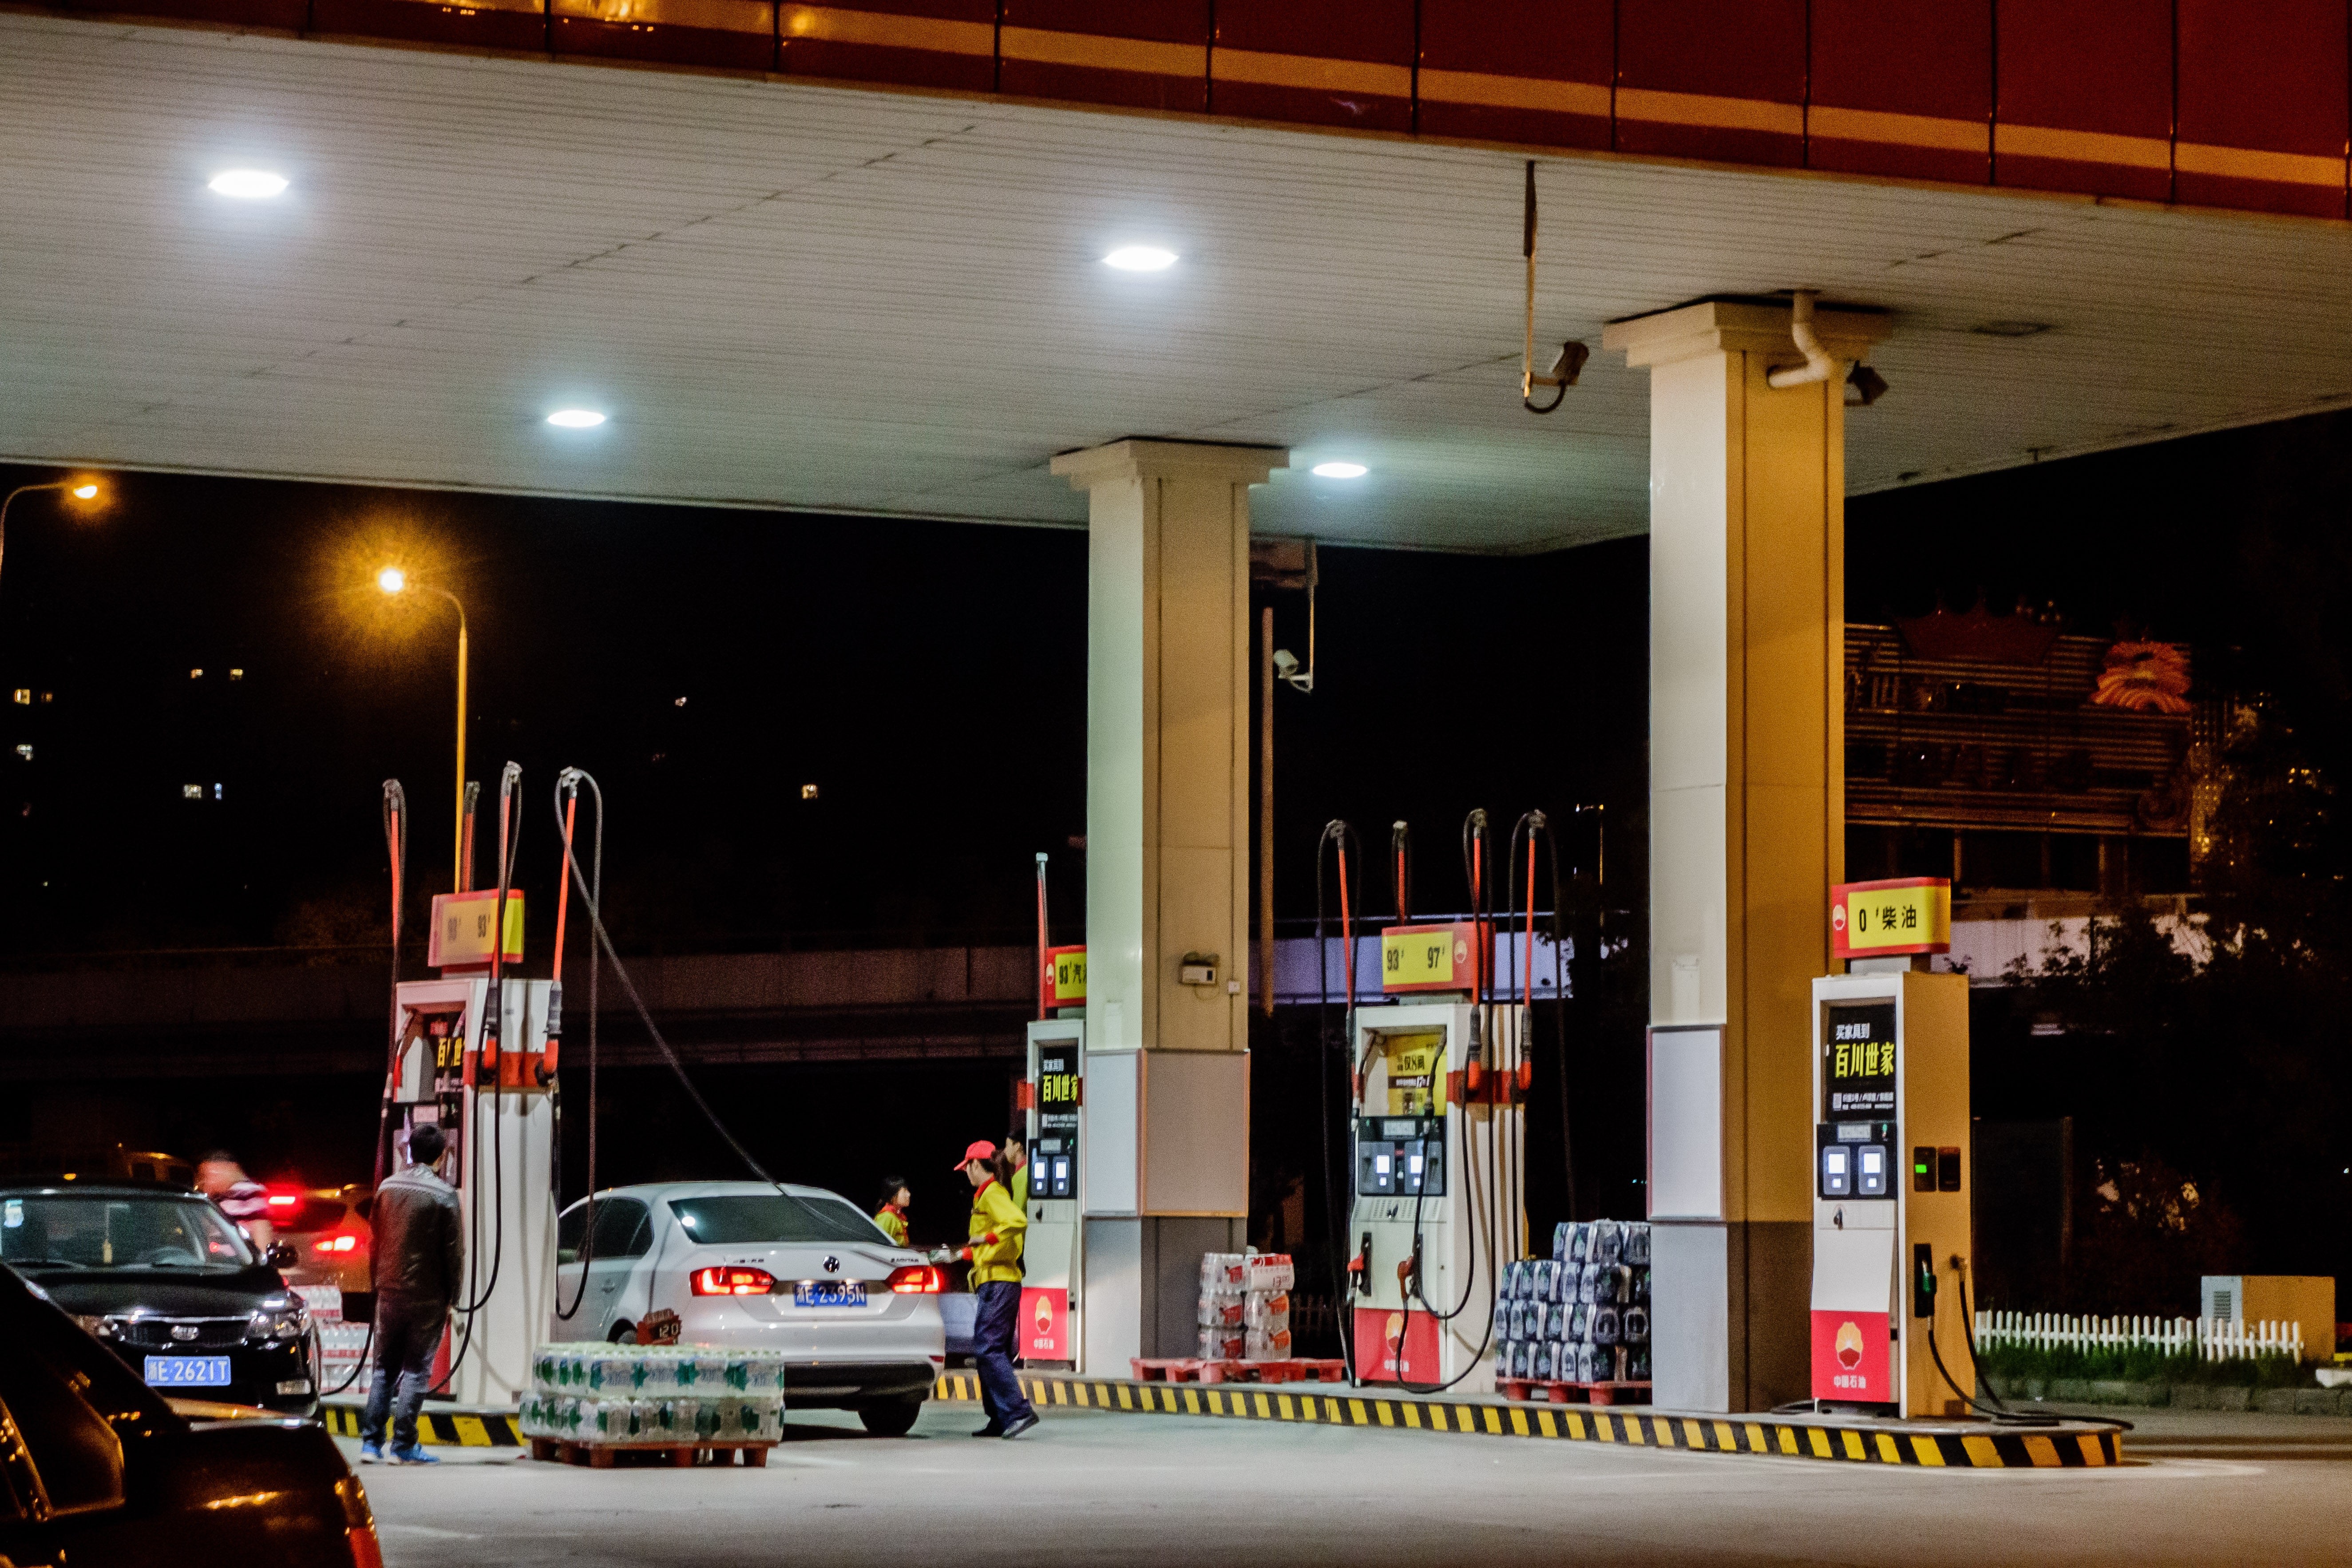 中国石油加油站夜景图片